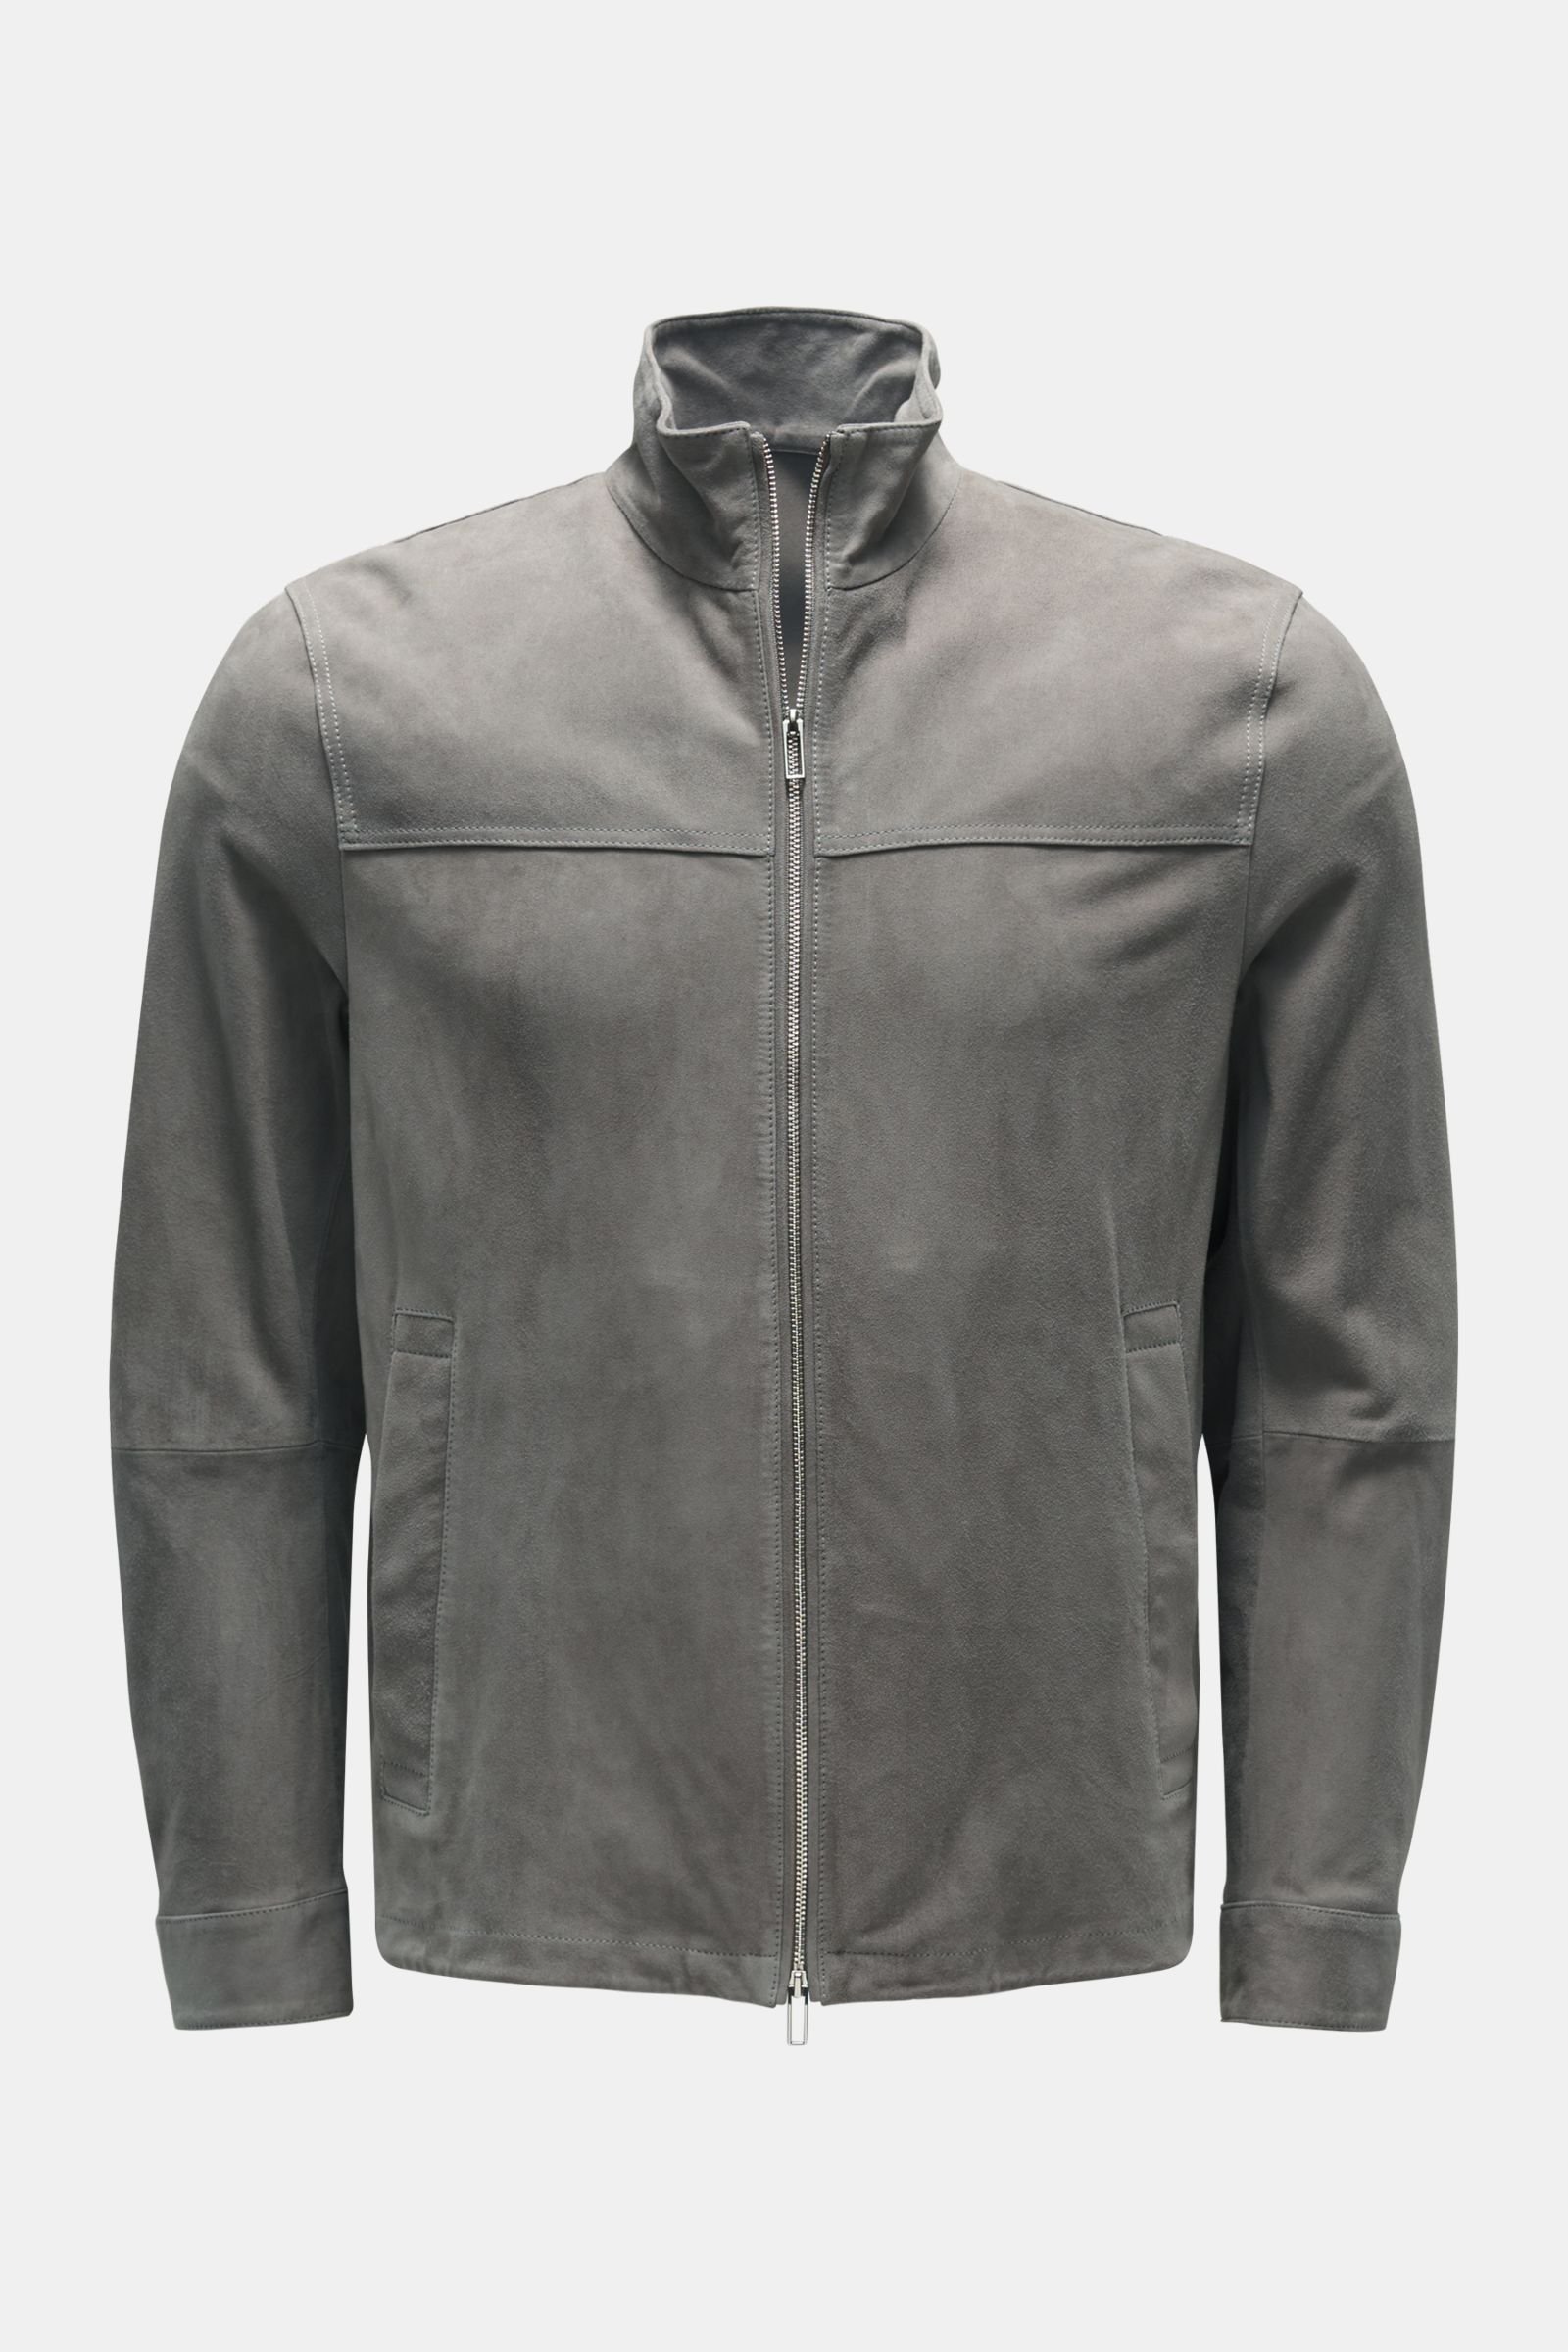 Suede jacket grey